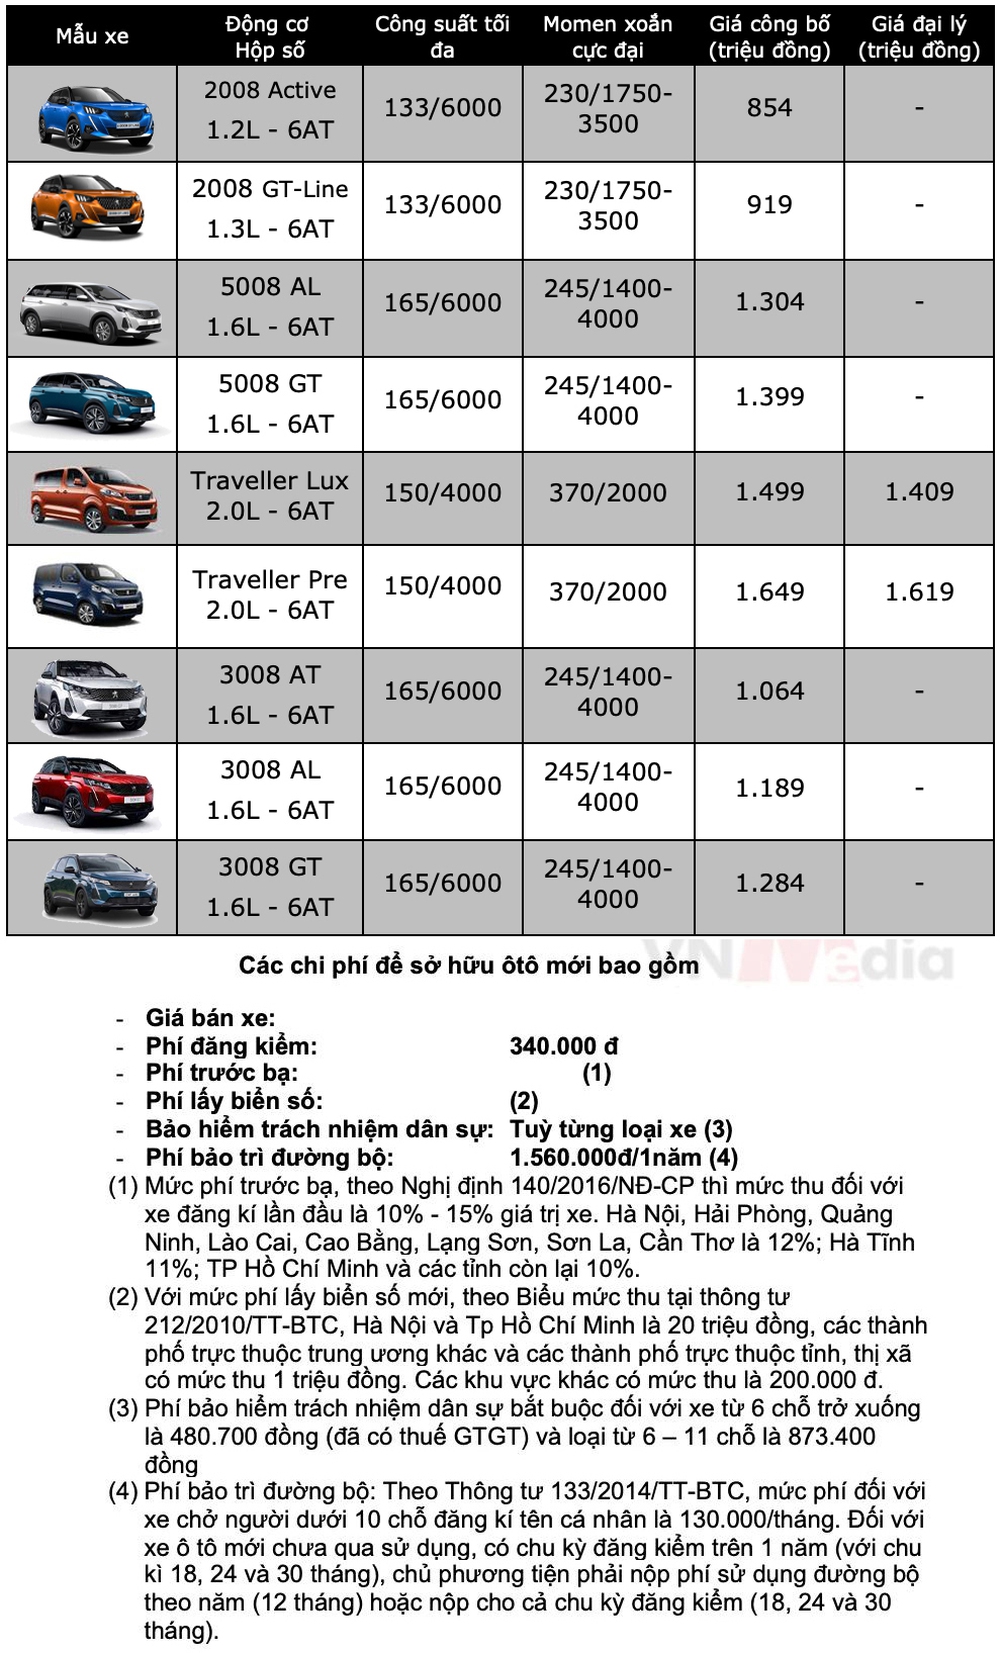 Bảng giá xe Peugeot tháng 3: Peugeot 3008 nhận ưu đãi gần 30 triệu đồng - Ảnh 2.